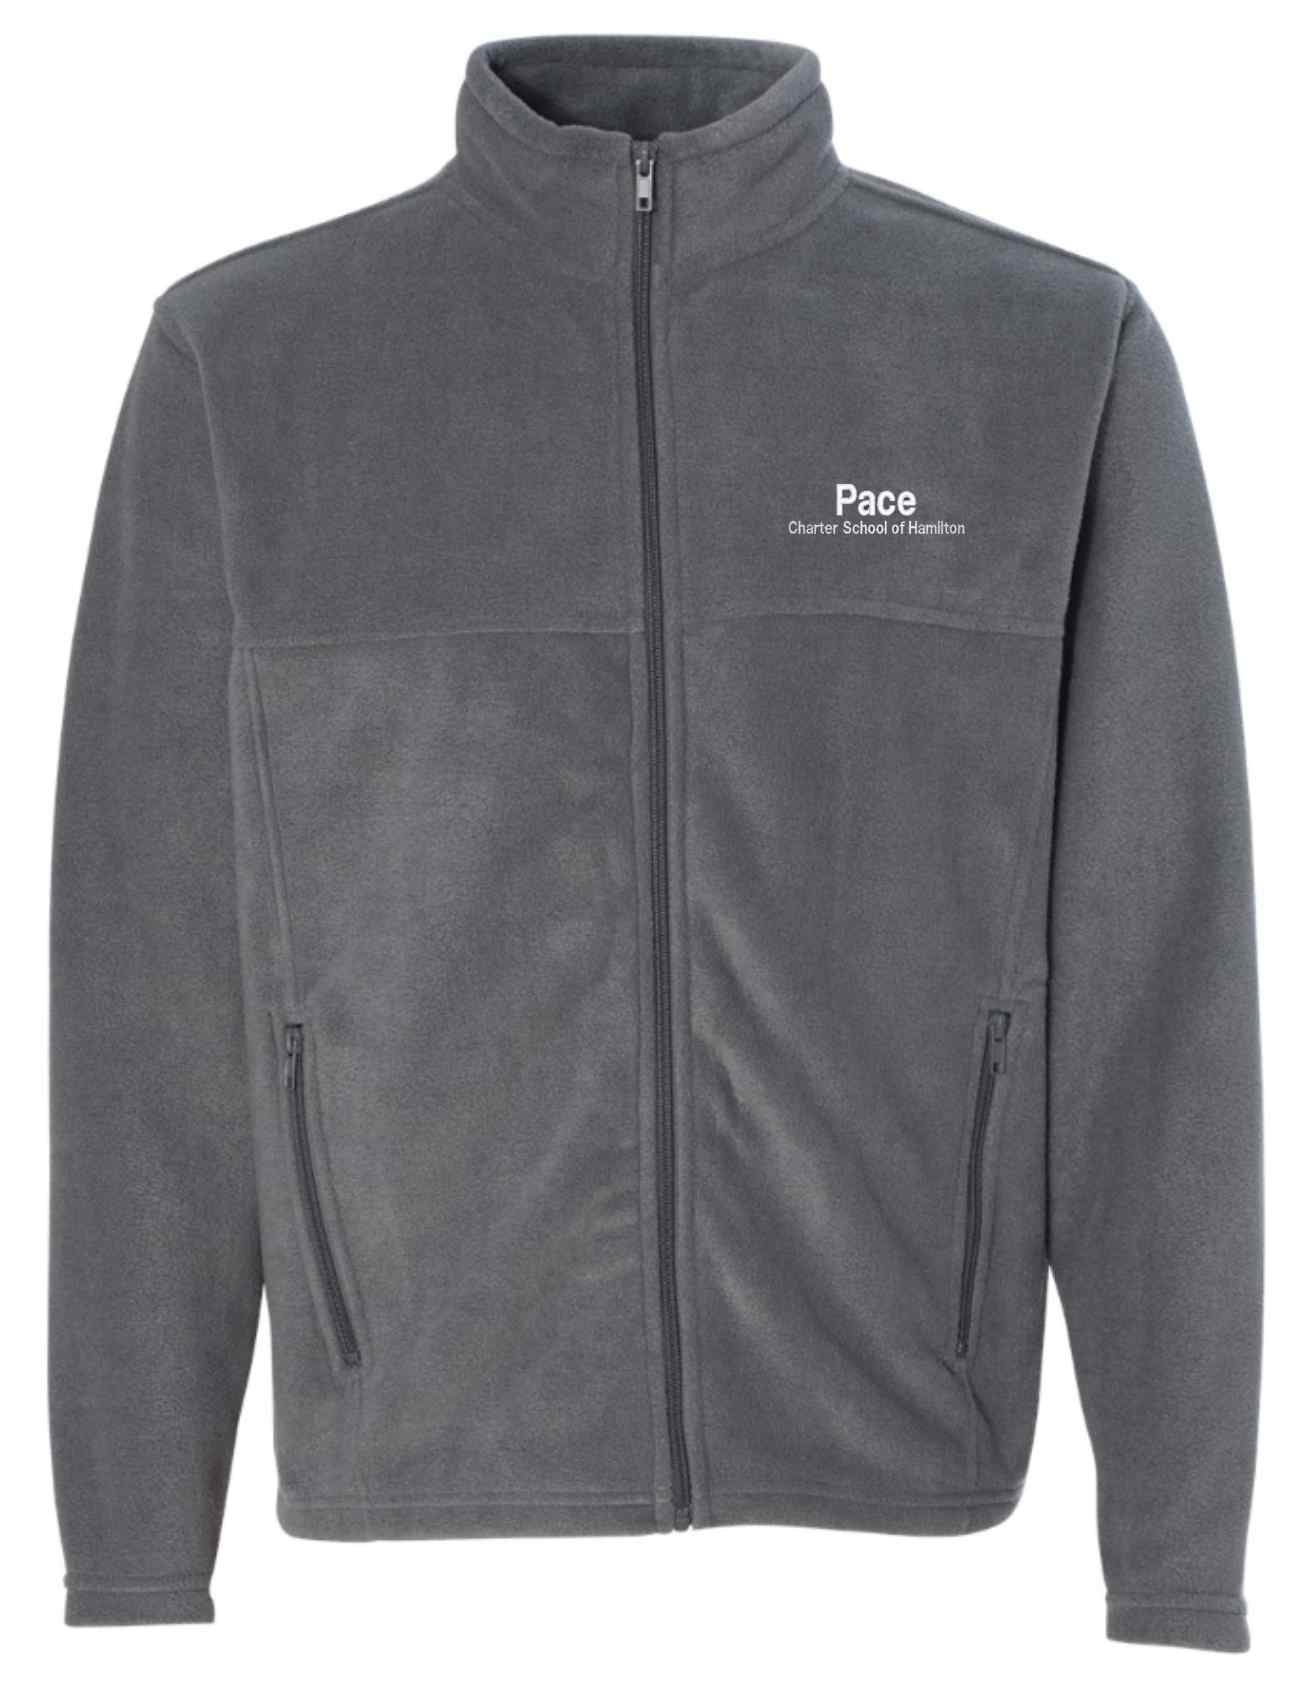 3-9632 Classic Men's Sport Embroidered Fleece Full-Zip Jacket